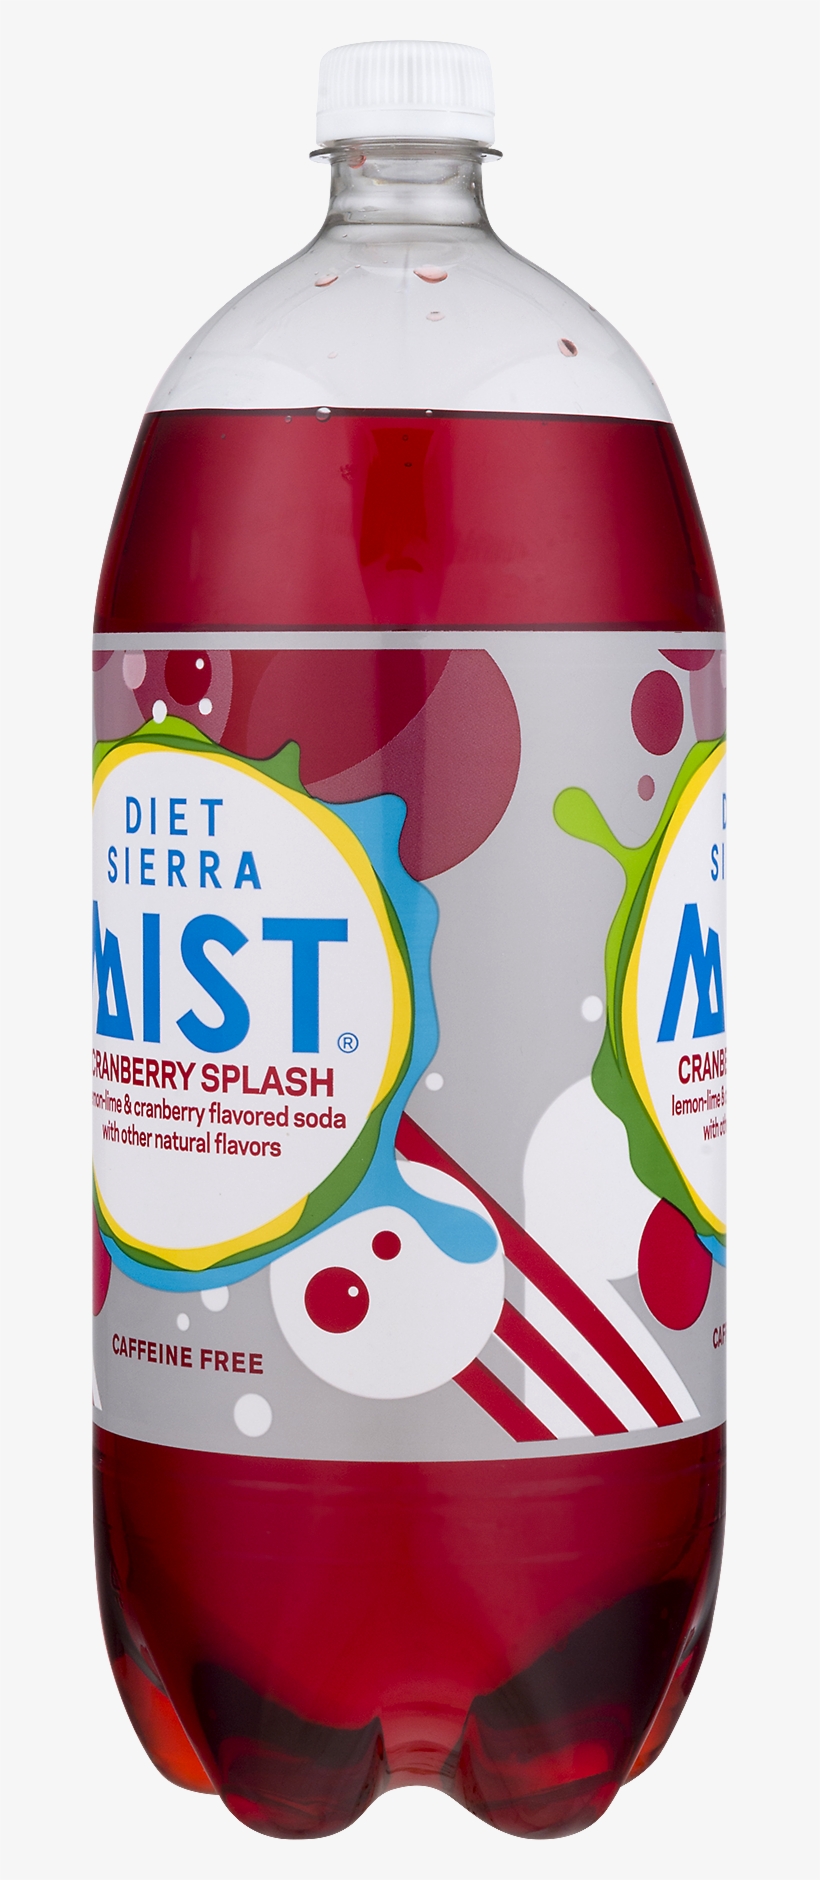 Diet Sierra Mist Caffeine Free Gluten Free Cranberry - Sierra Mist, transparent png #8312835